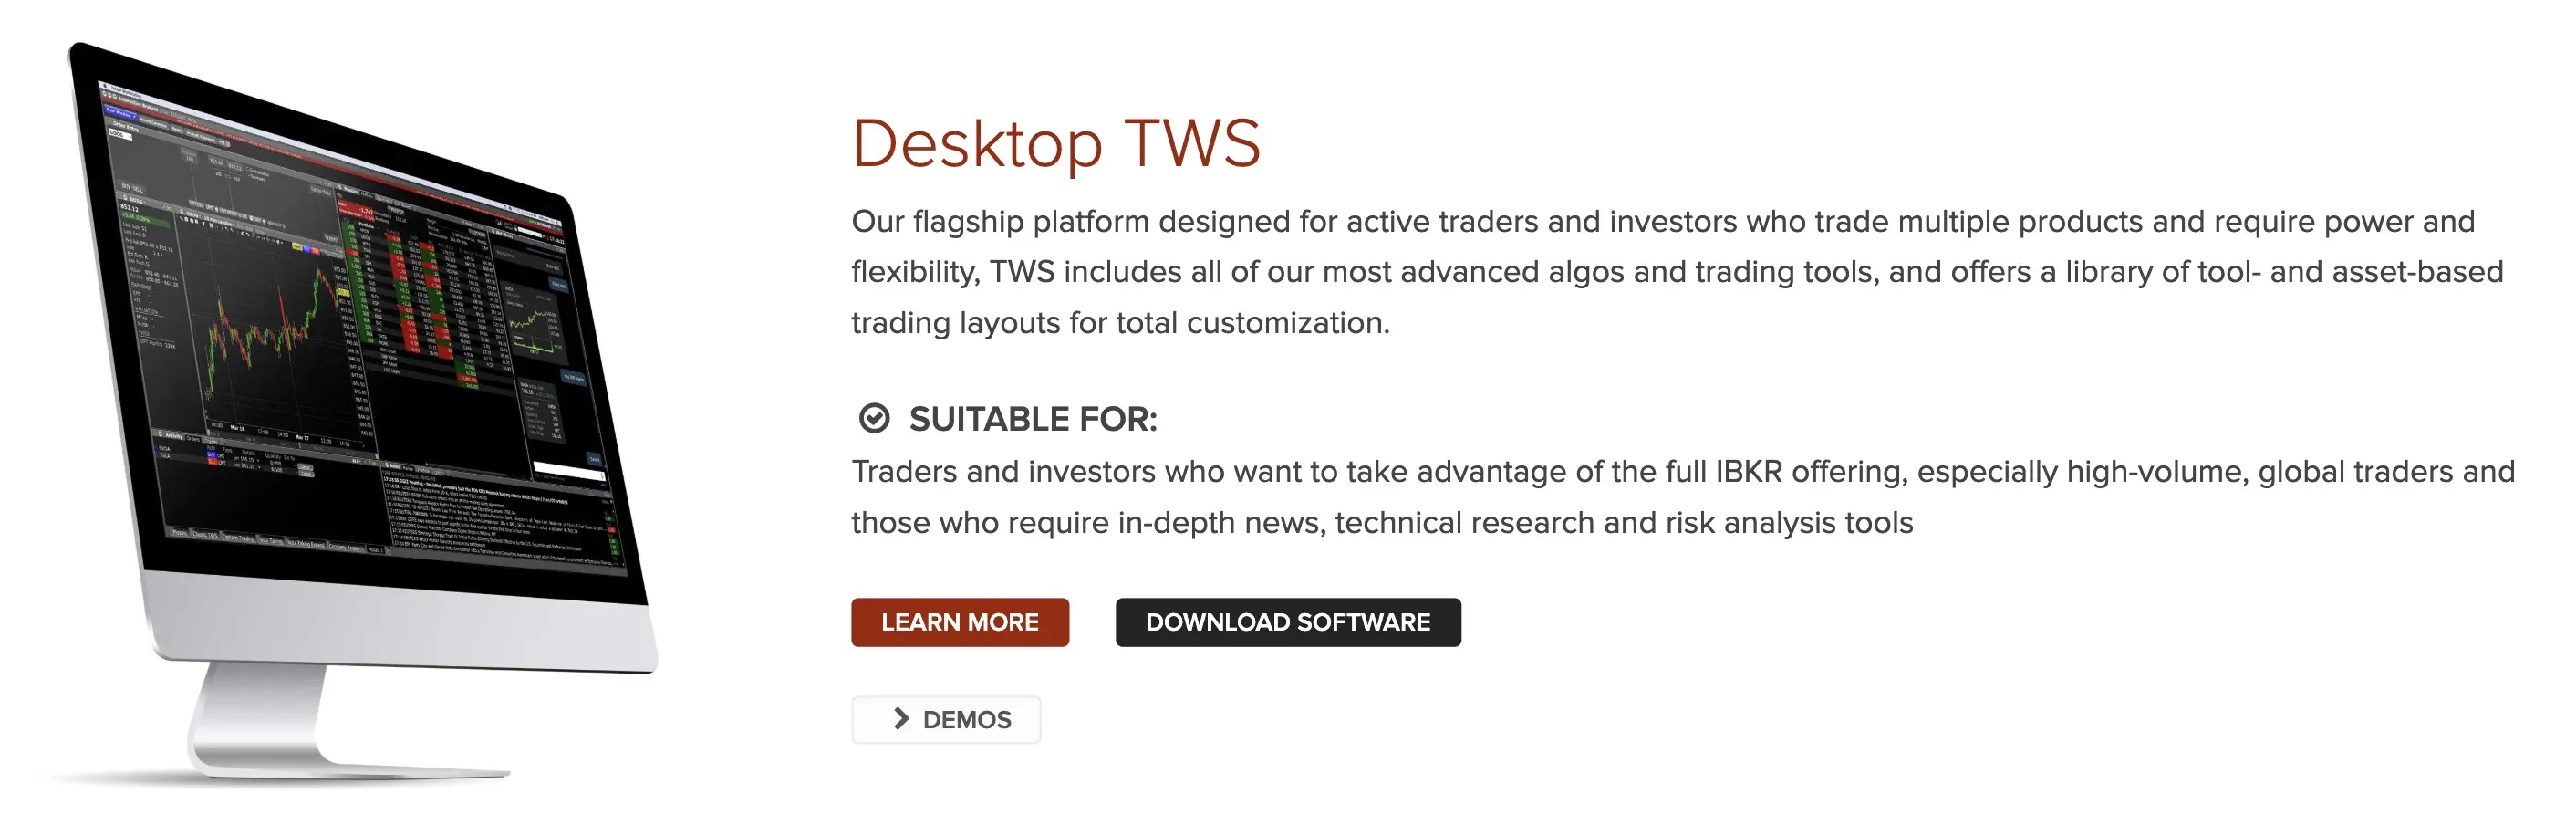 Desktop TWS (Trader Workstation)